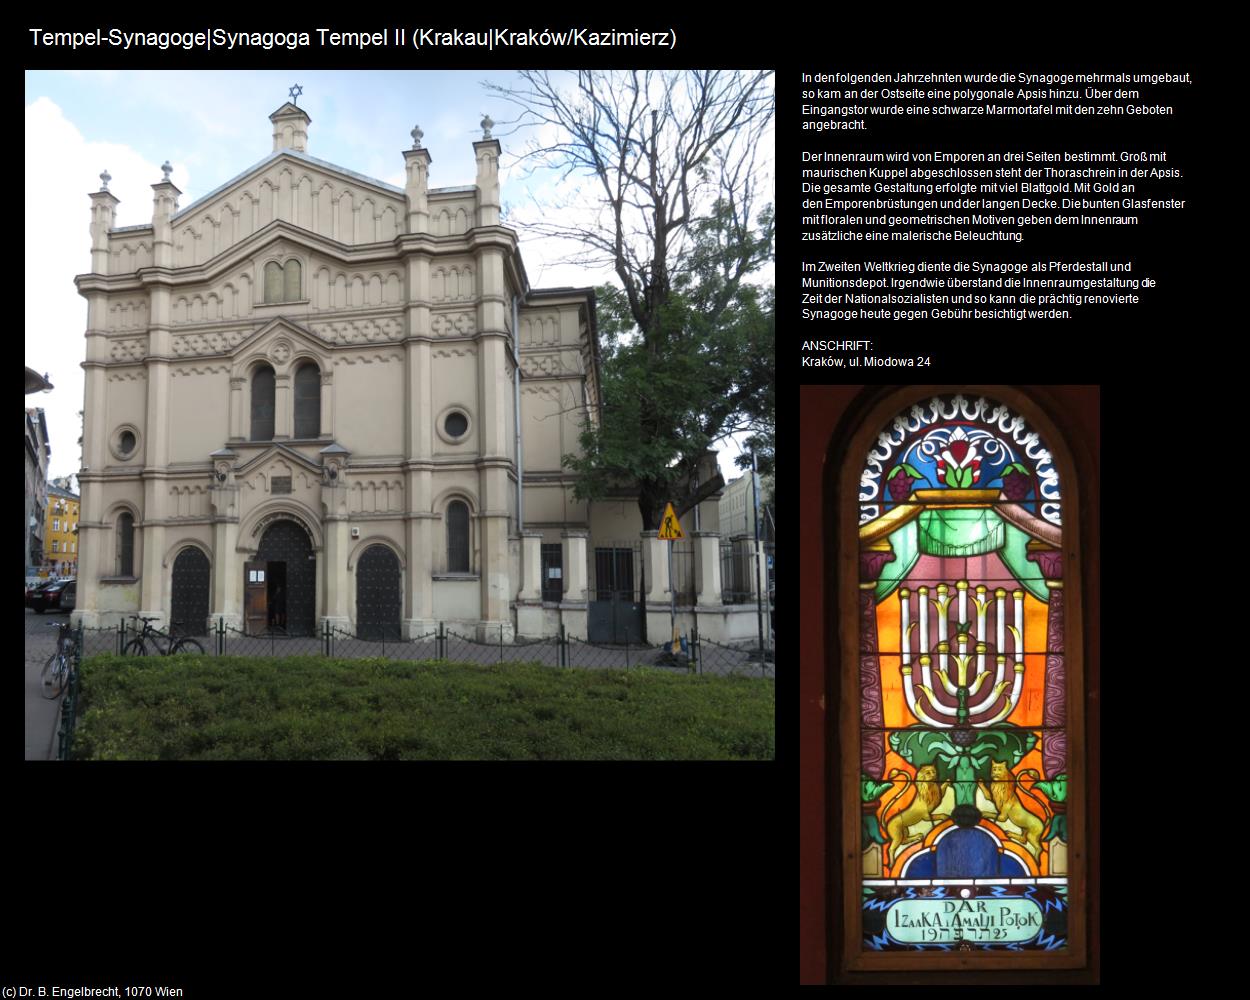 Tempel-Synagoge II (Kazimierz) (Krakau|Krakow) in POLEN-Galizien